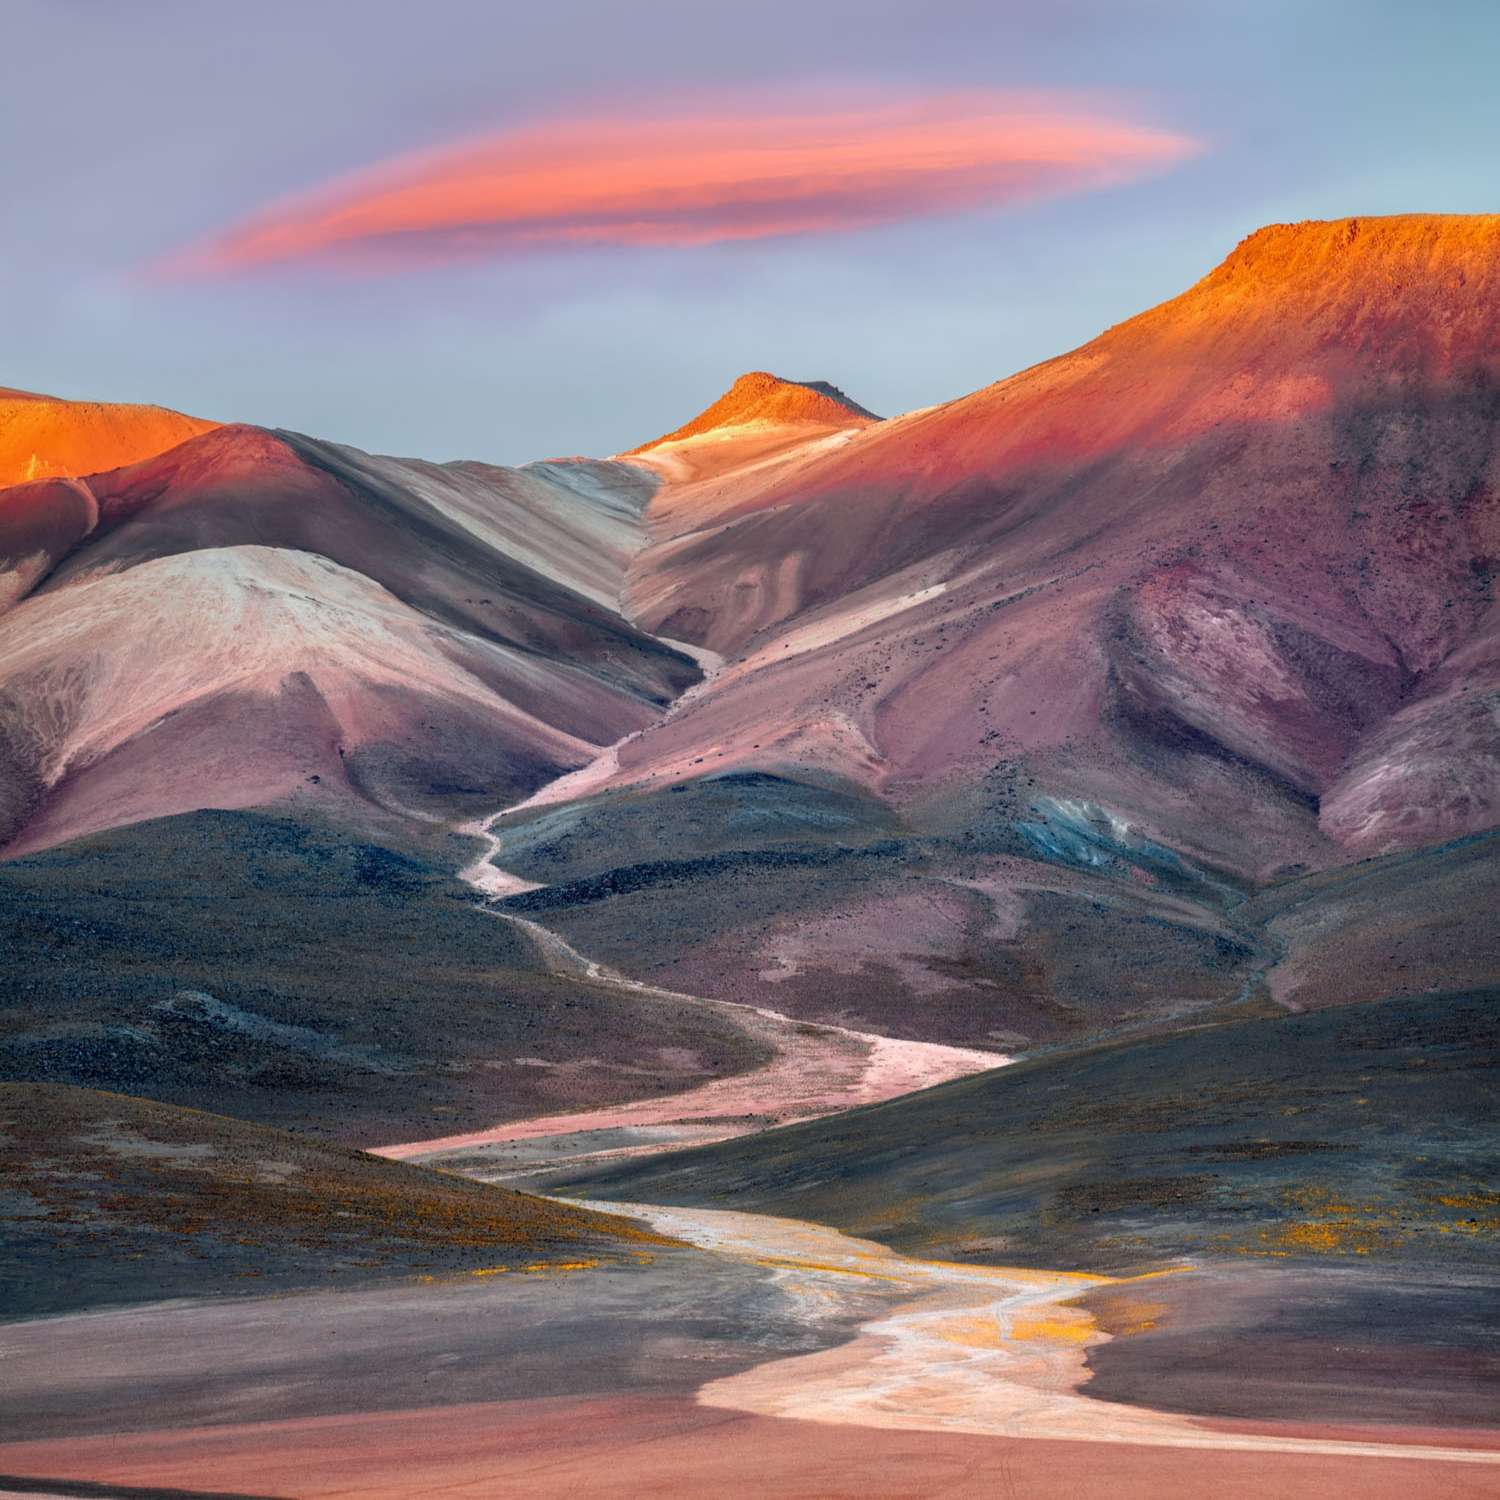 Seven Colours Mountain Landscape Photograph taken by award-winning photographer Ignacio Palacios